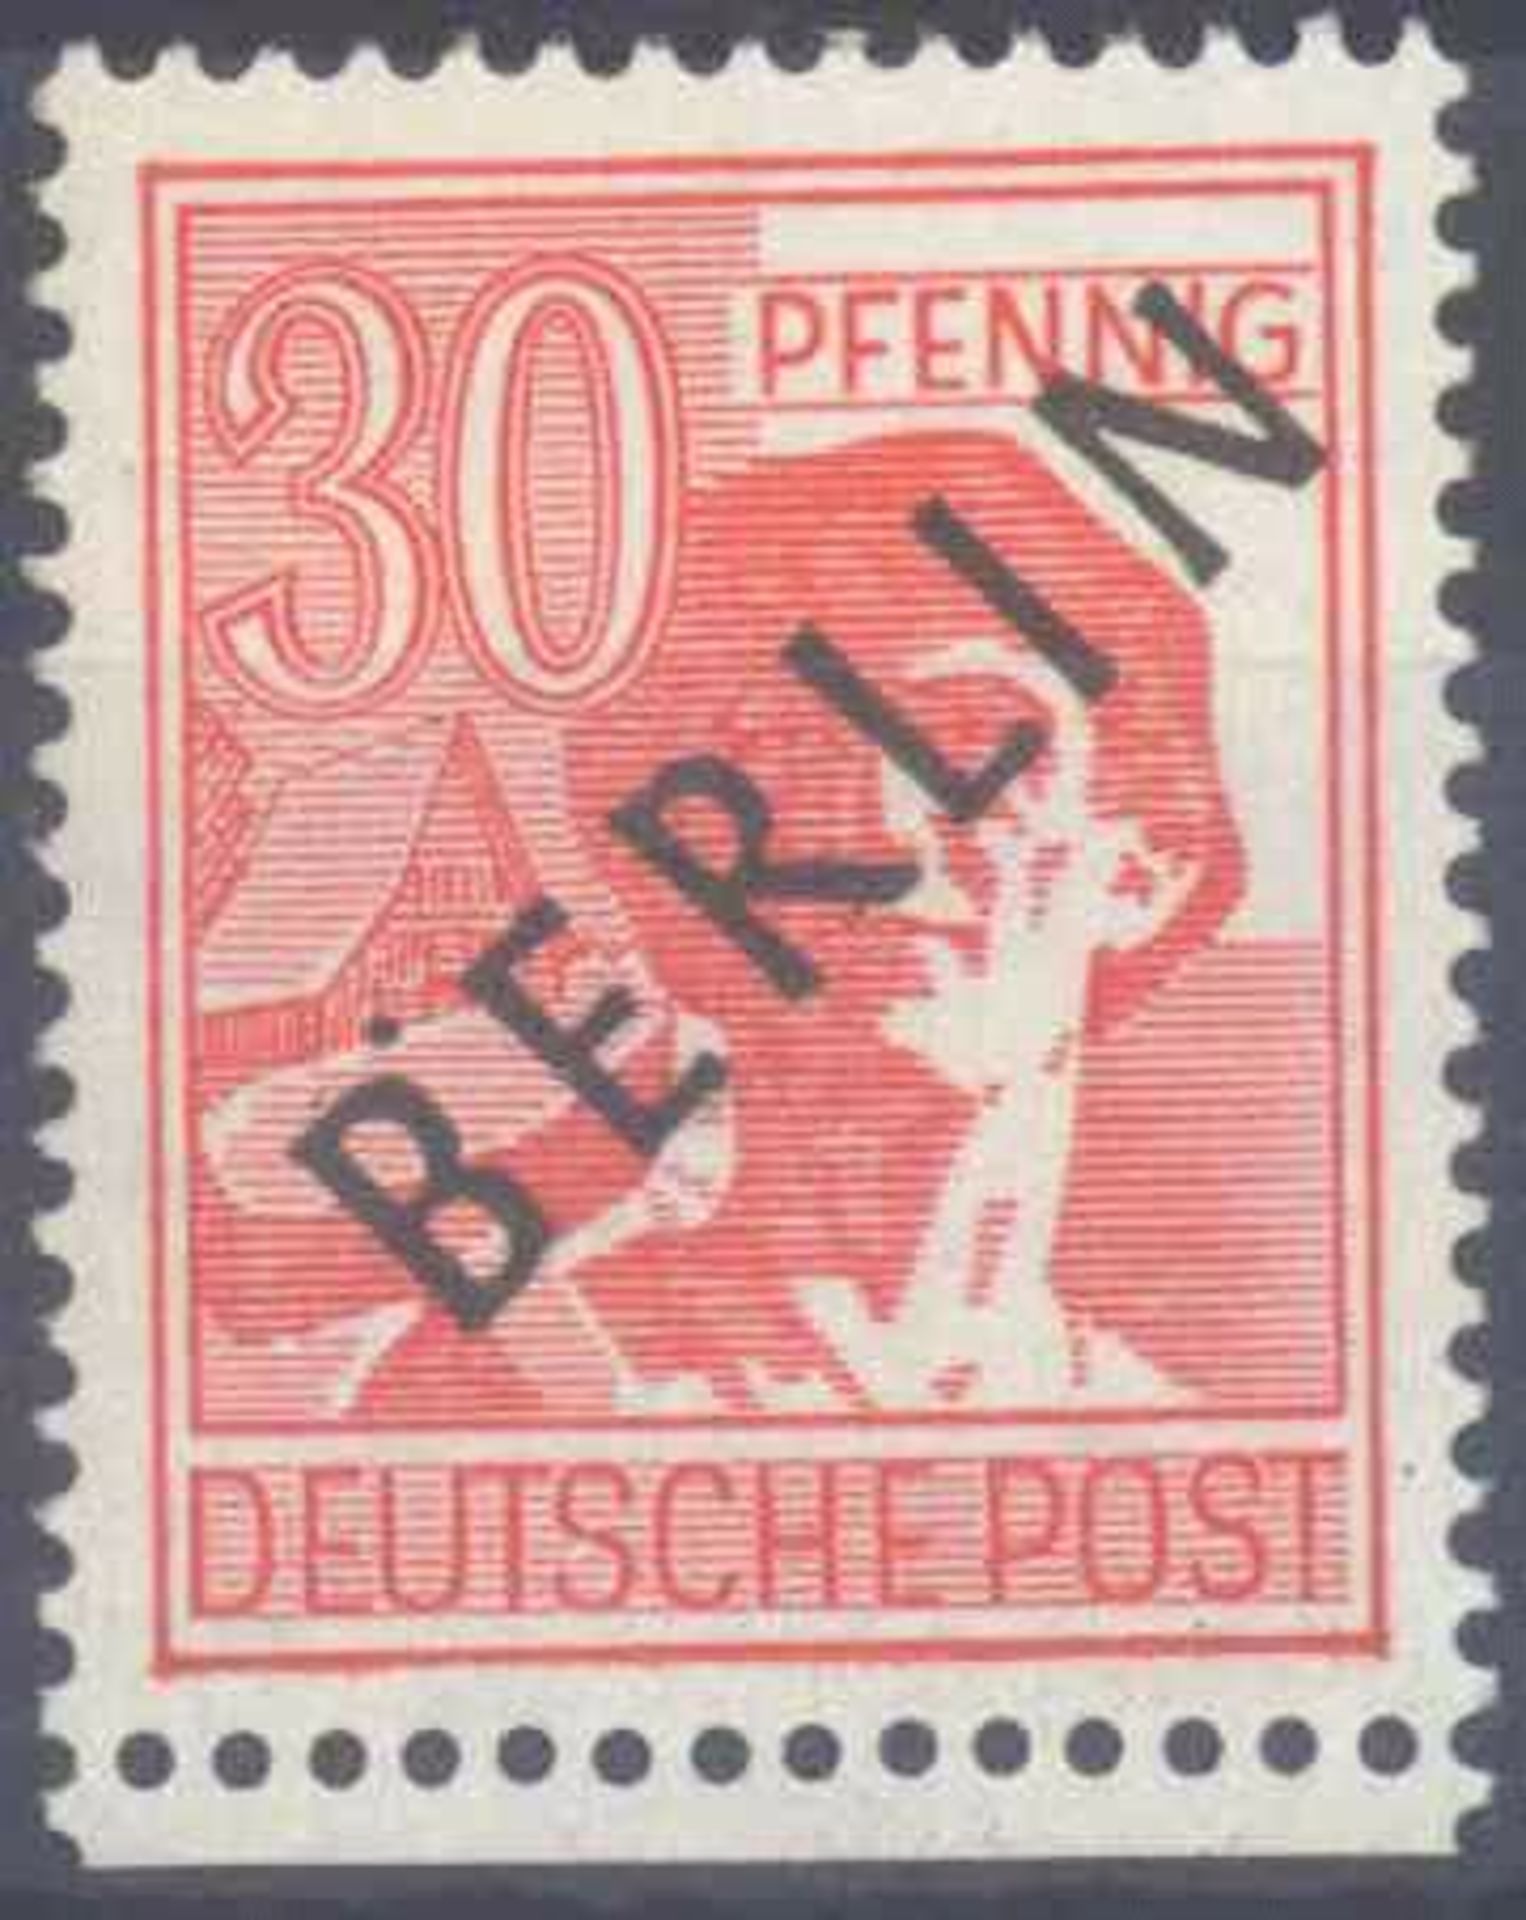 1948 Berlin, 30 Pfennig Schwarzaufdruck mit Aufdruckfehler"schwarzer Punkt oben am B von BERLIN",